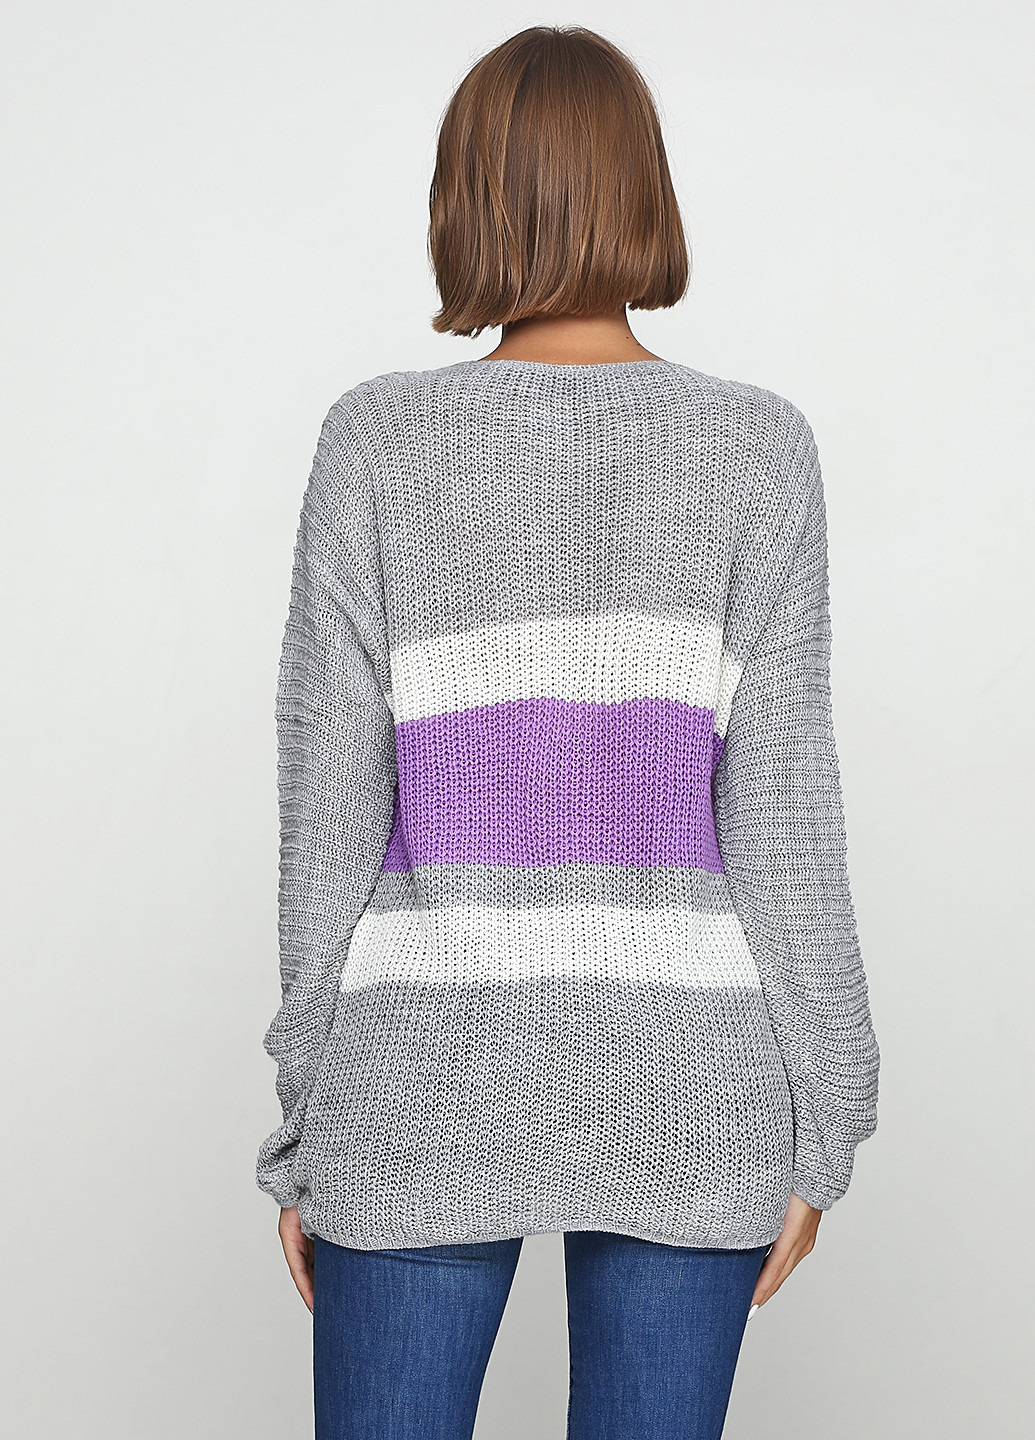 Светло-серый демисезонный пуловер пуловер Eser